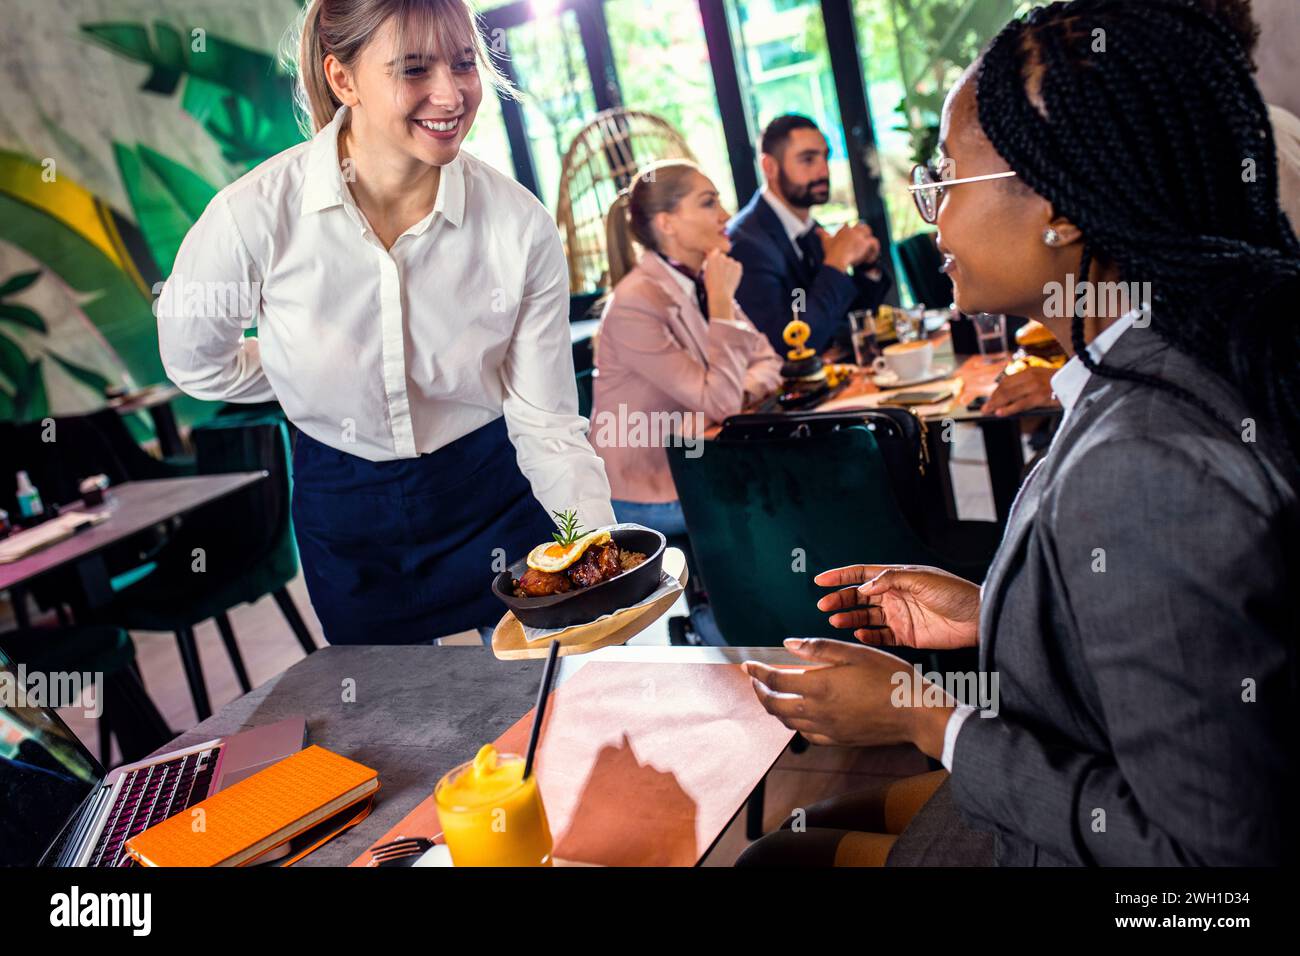 Lächelnde Kellnerin serviert im Restaurant eine Mahlzeit für Geschäftsfrau. Stockfoto